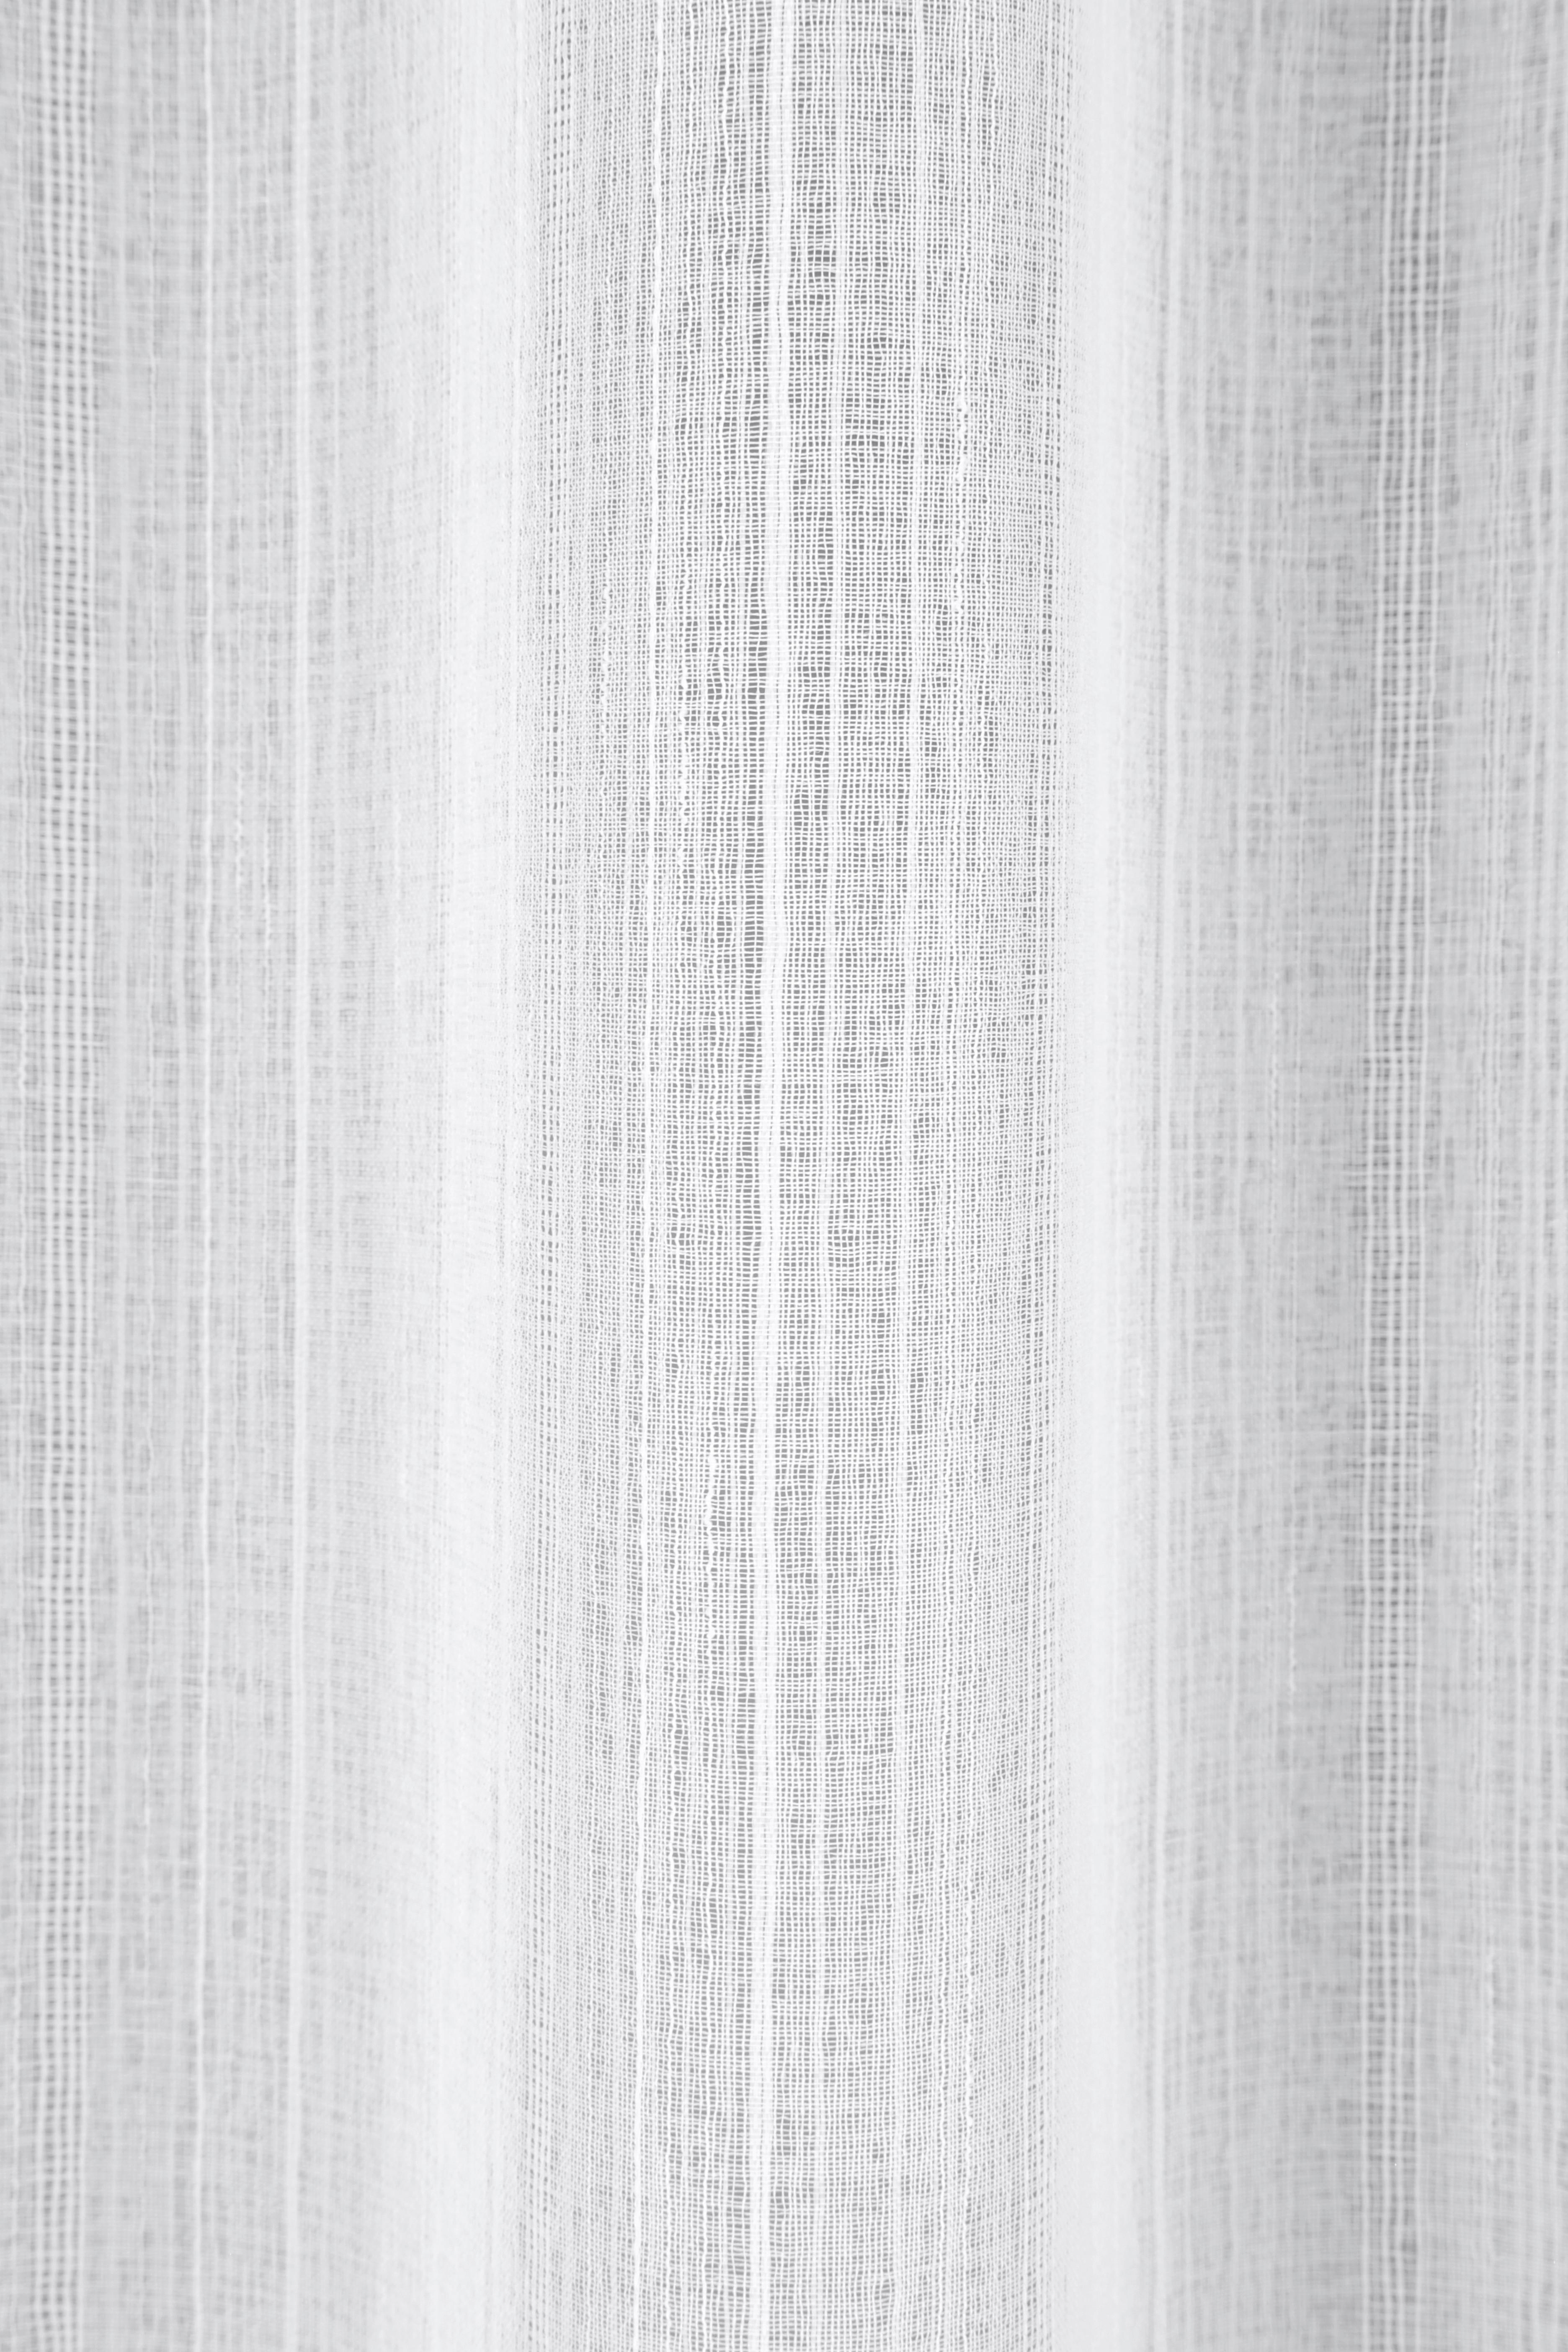 Készfüggöny Kiara - Fehér, modern, Textil (135/245cm) - Luca Bessoni